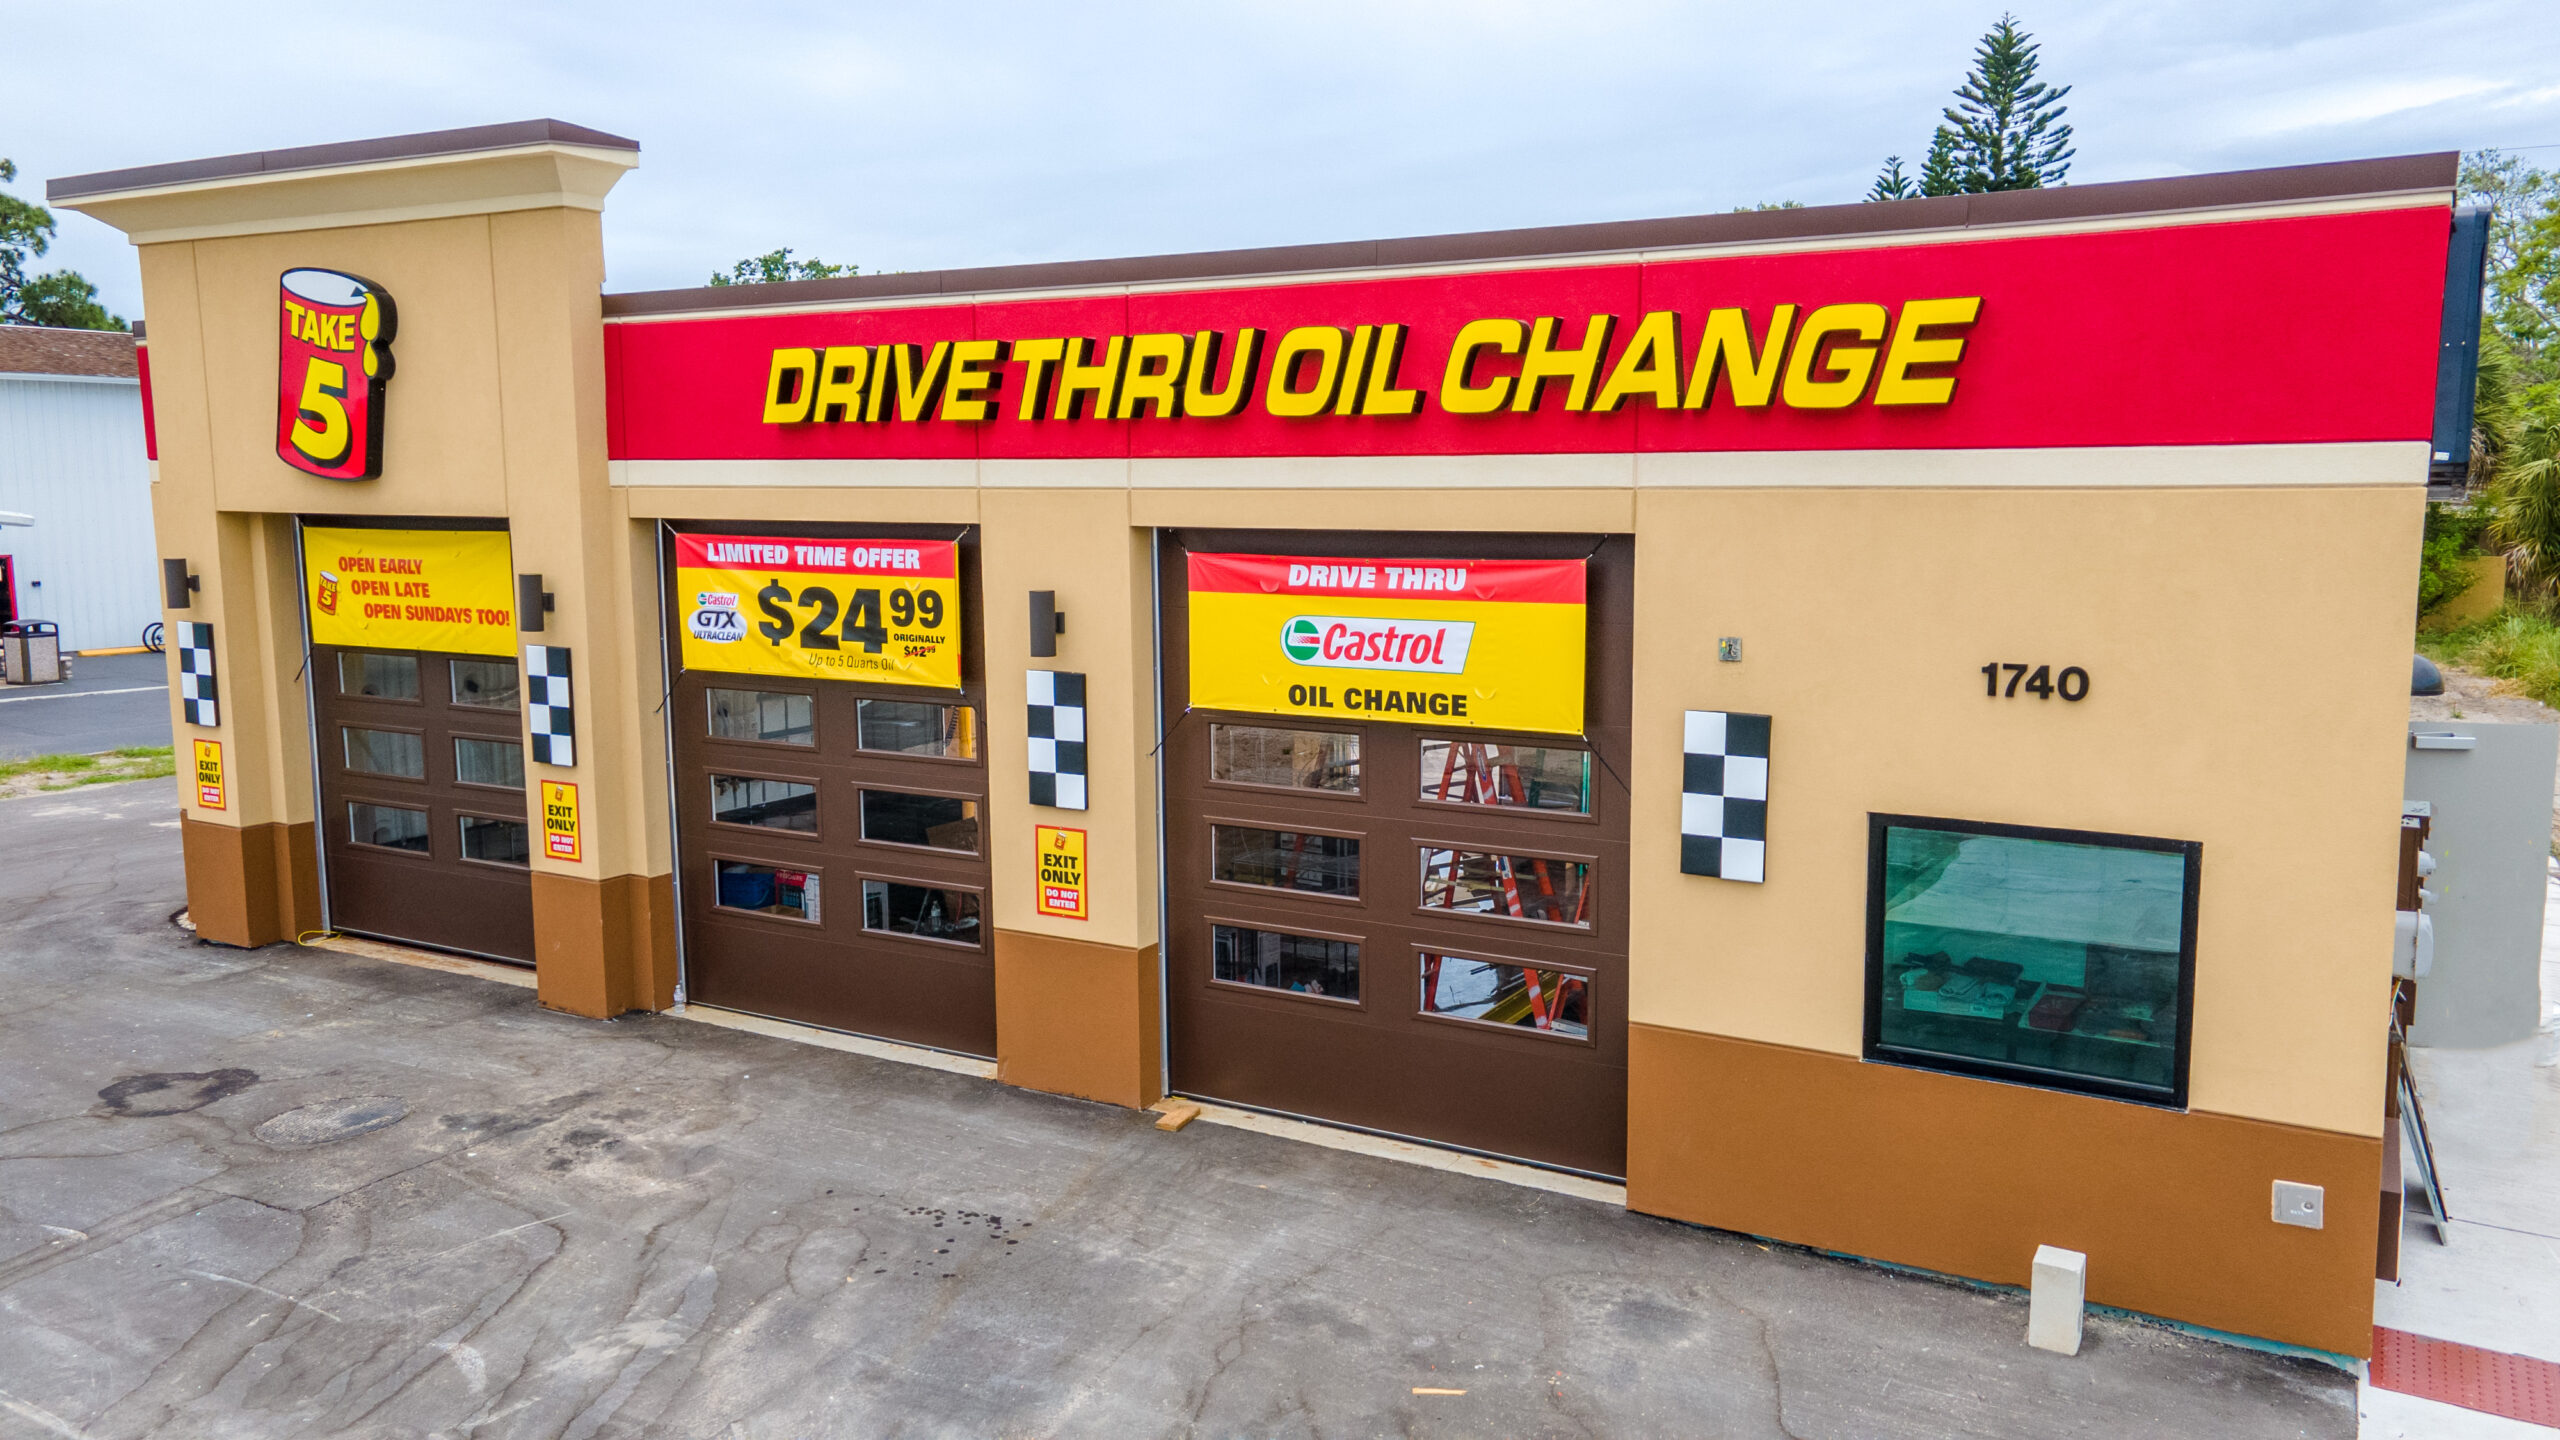 take 5 oil change liberty township